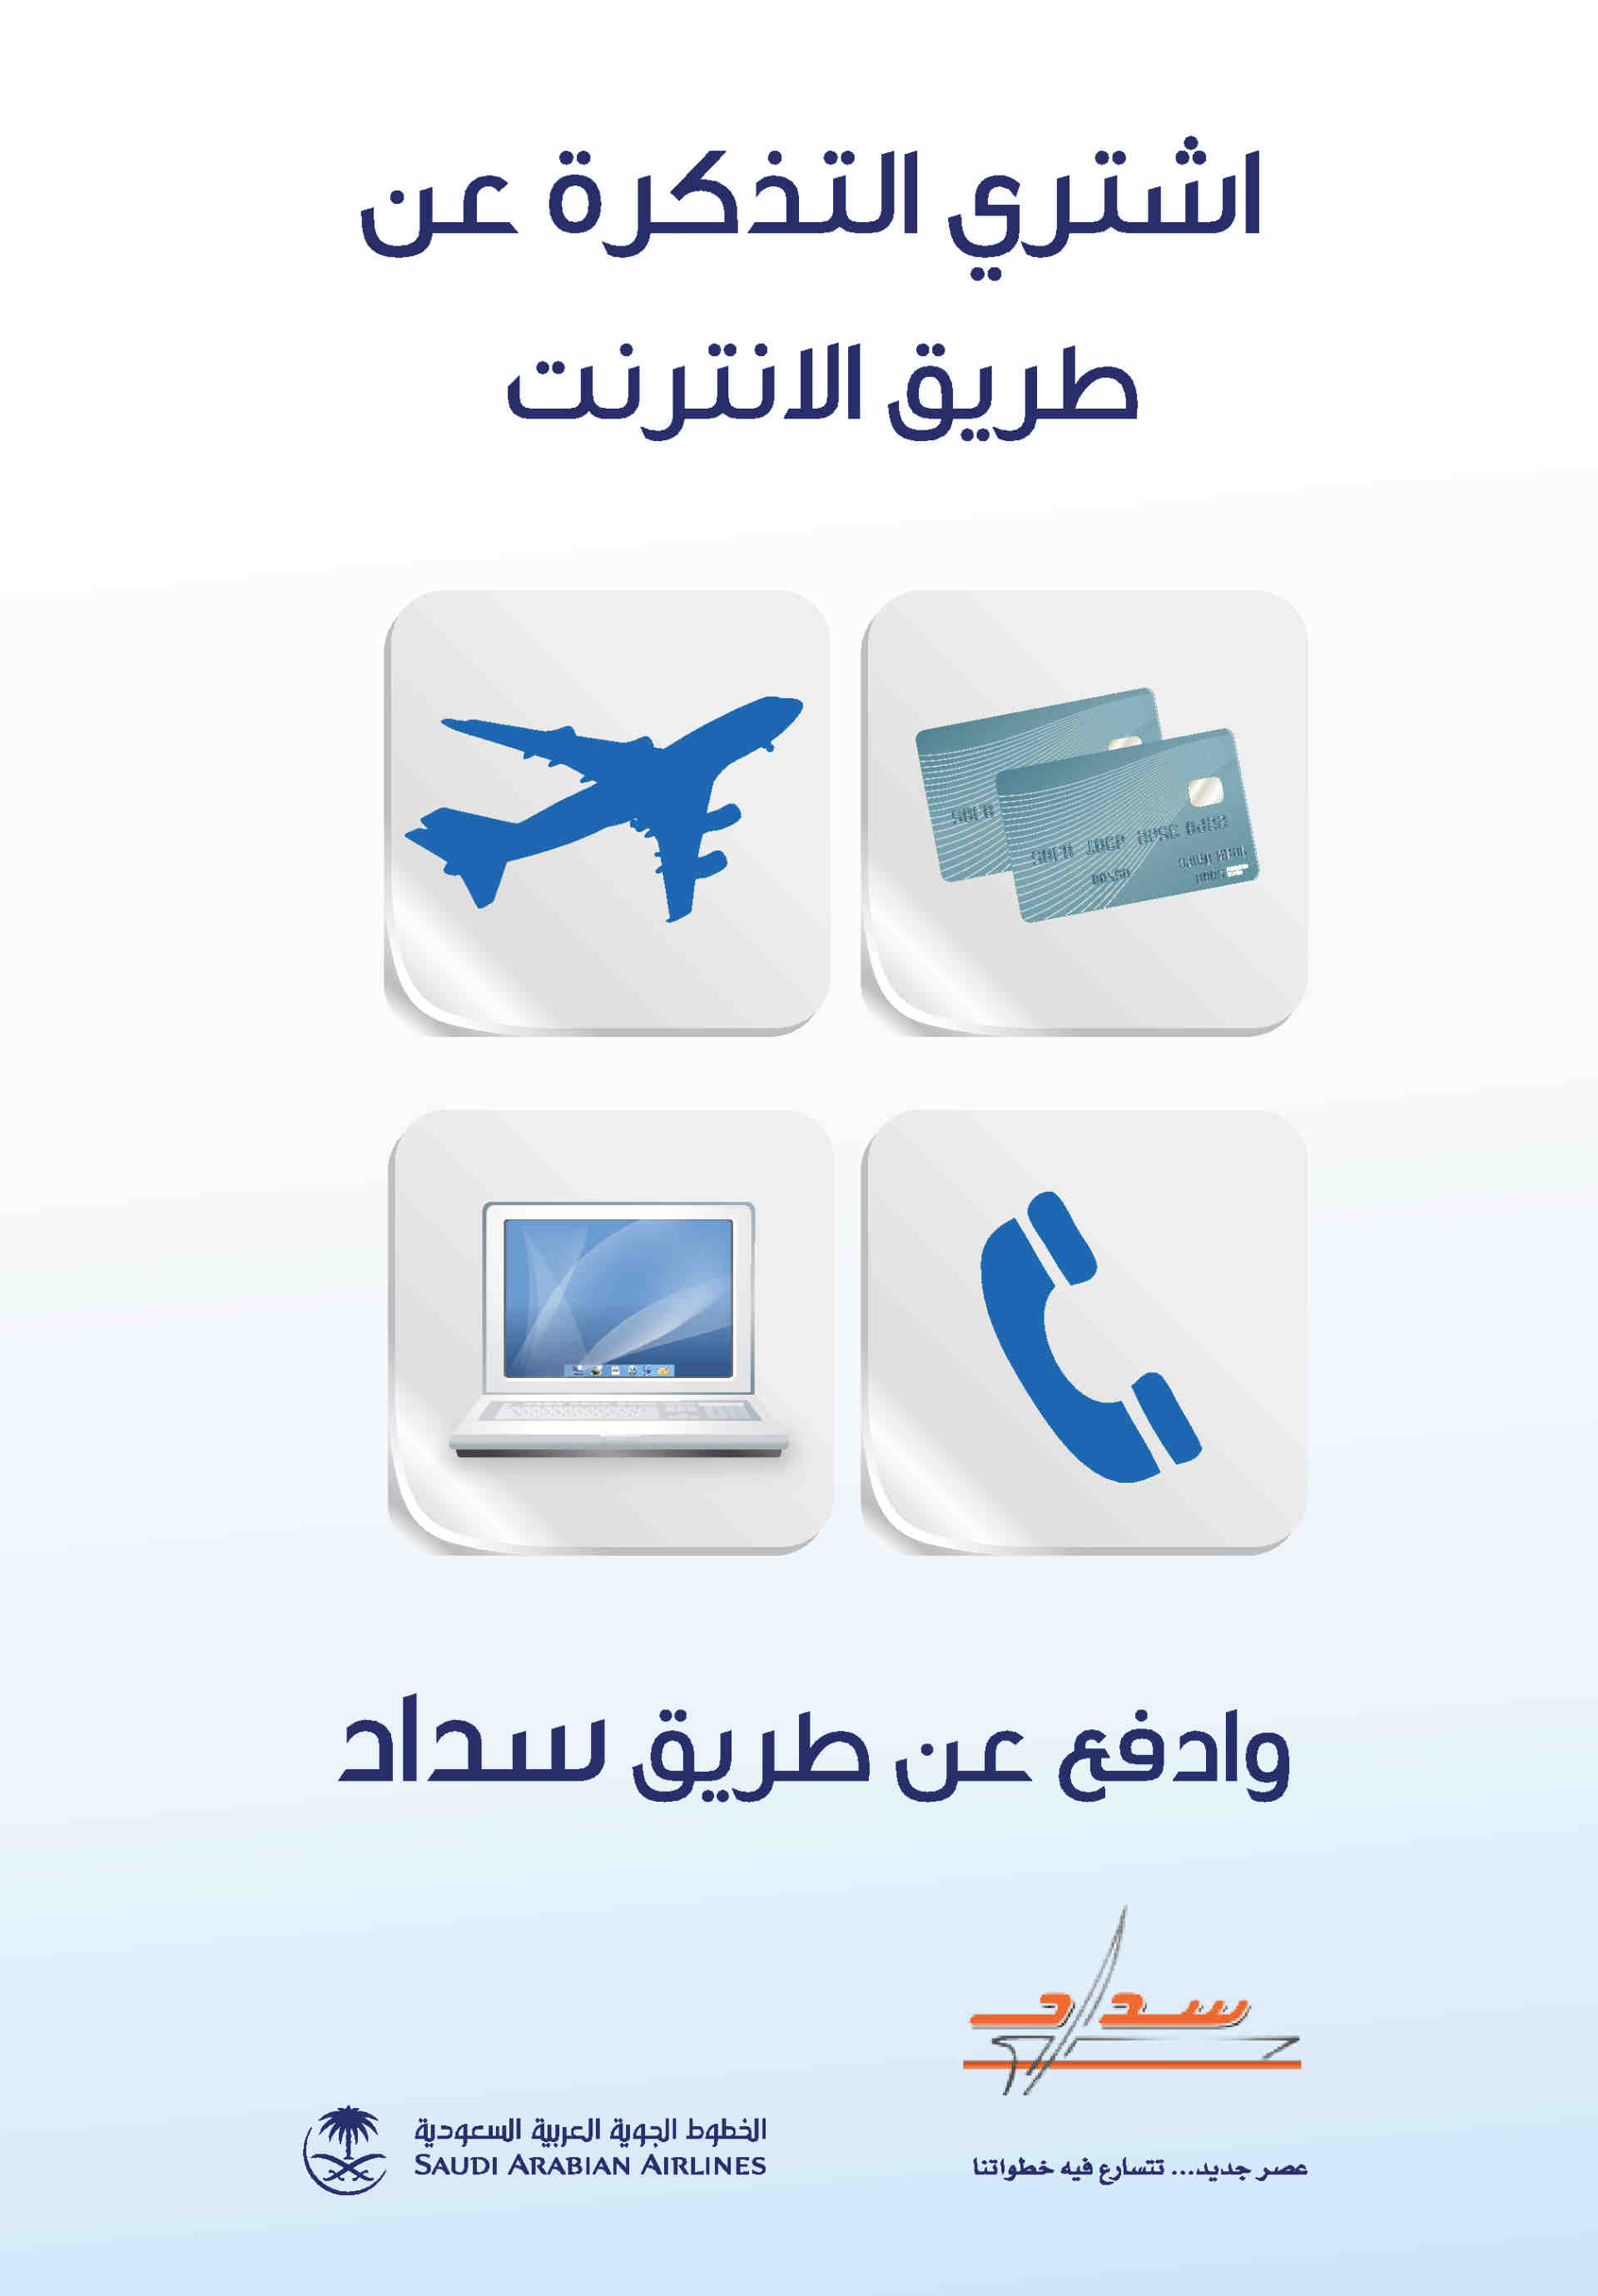 Saudi Arabia Airlines